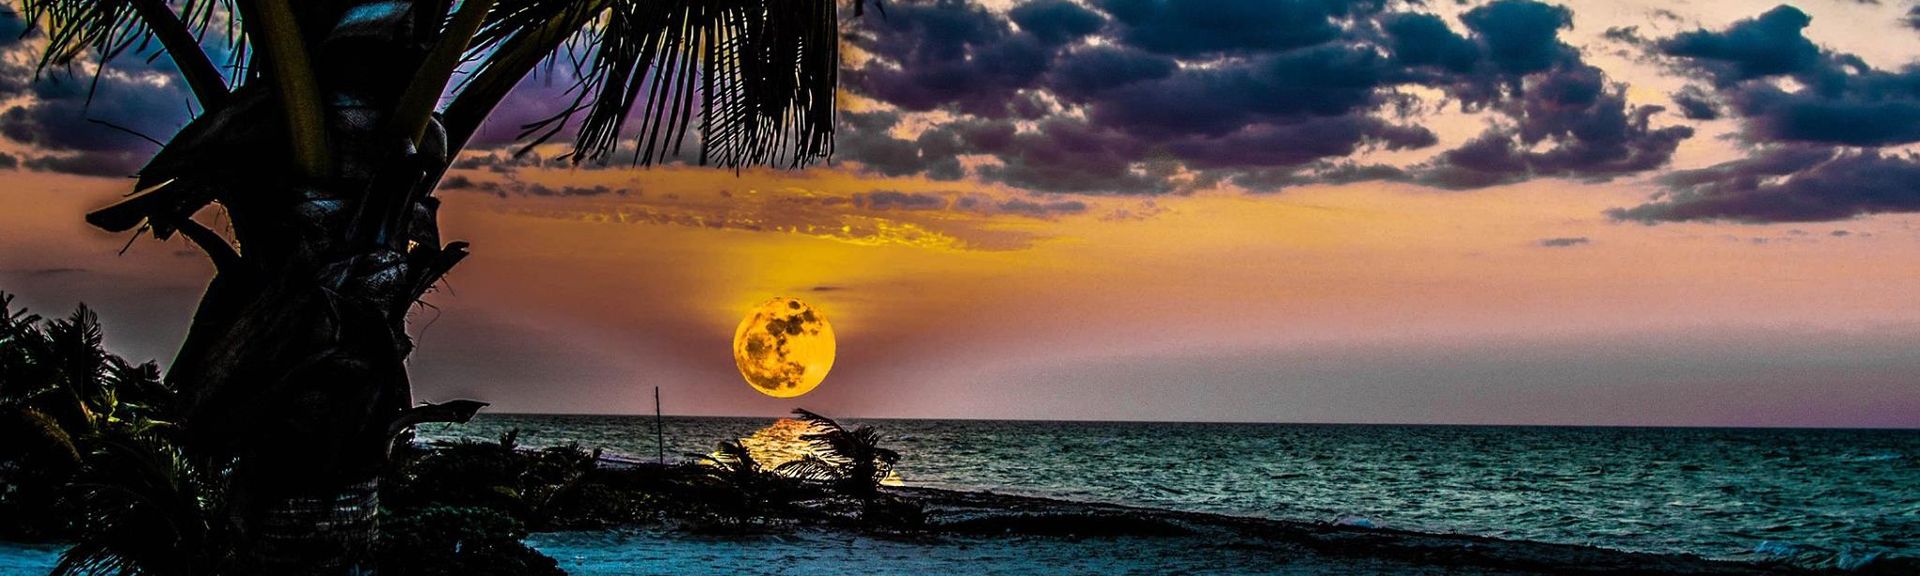 Resultado de imagen para yucatan full moons